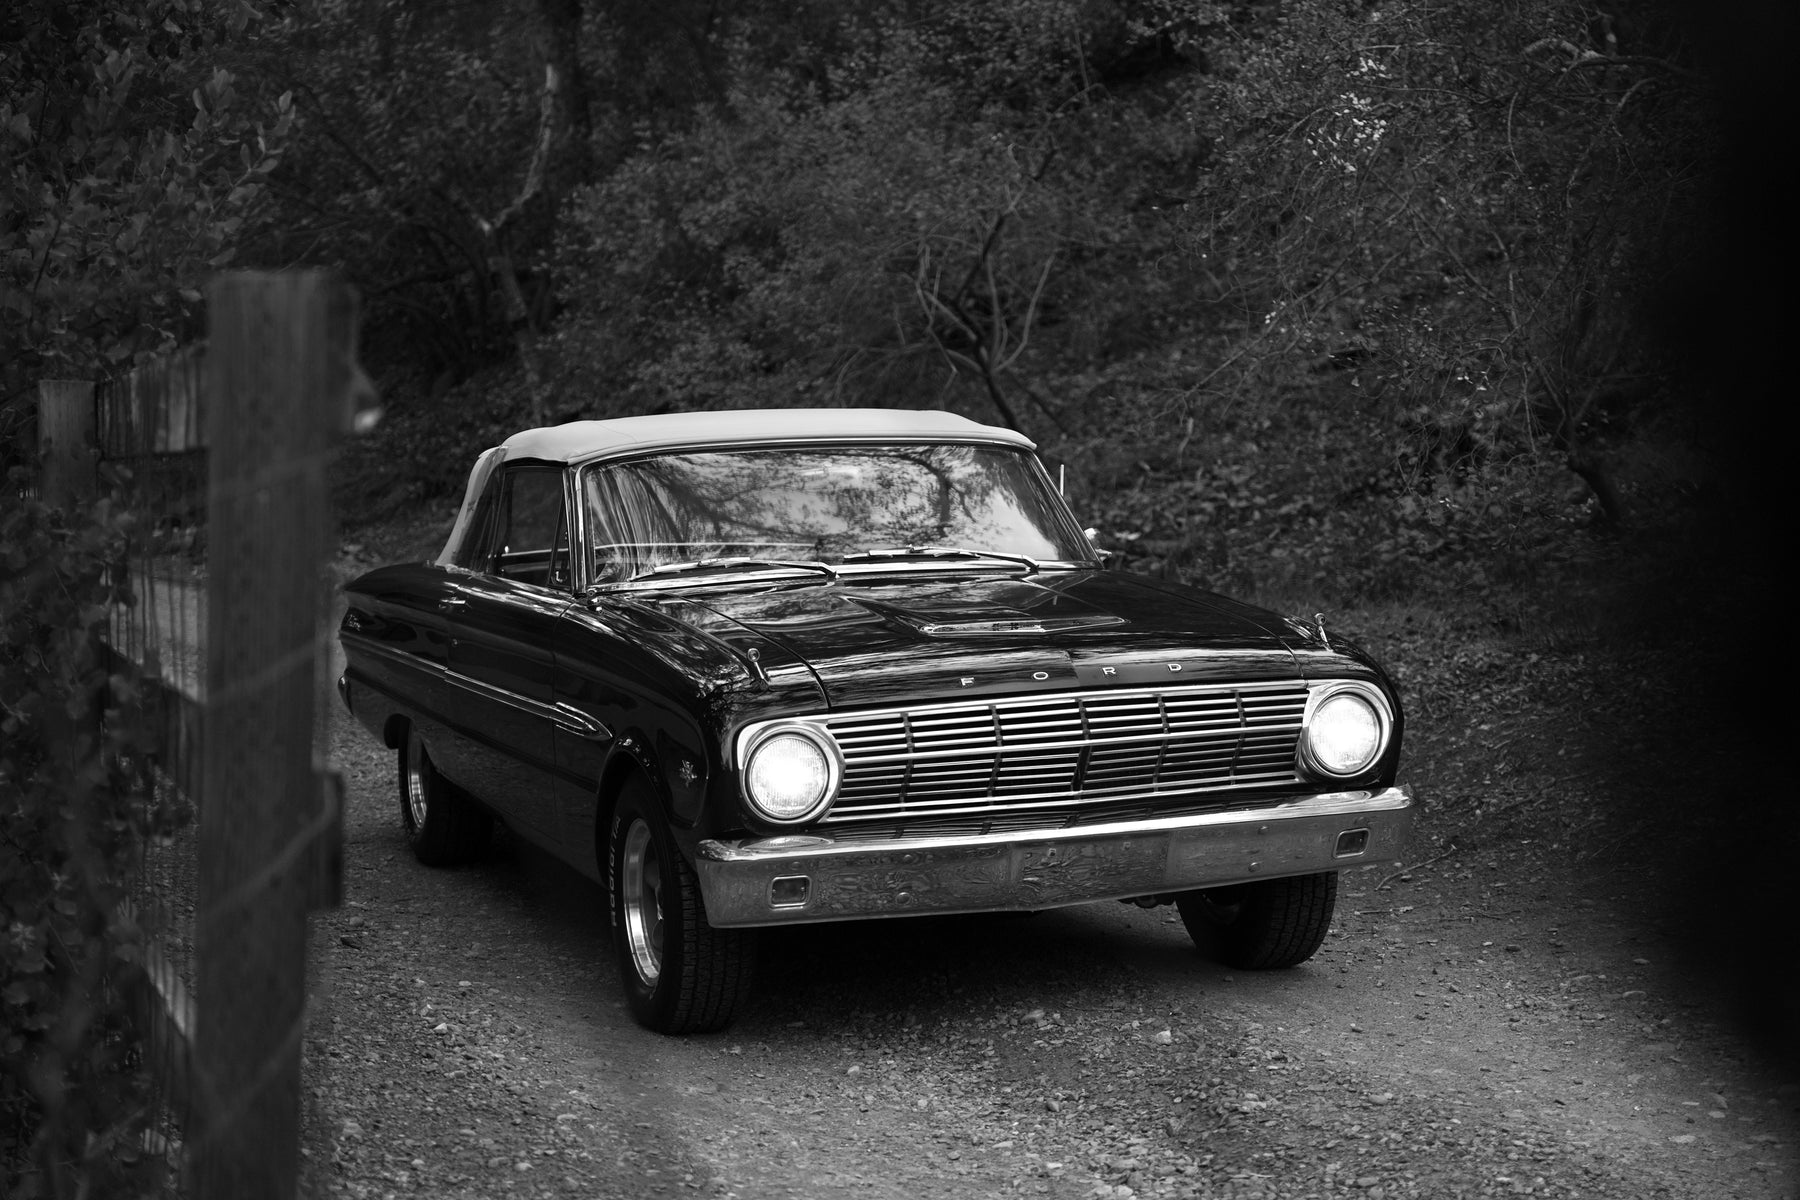 1963 Ford Falcon Convertible FINE ART PRINT